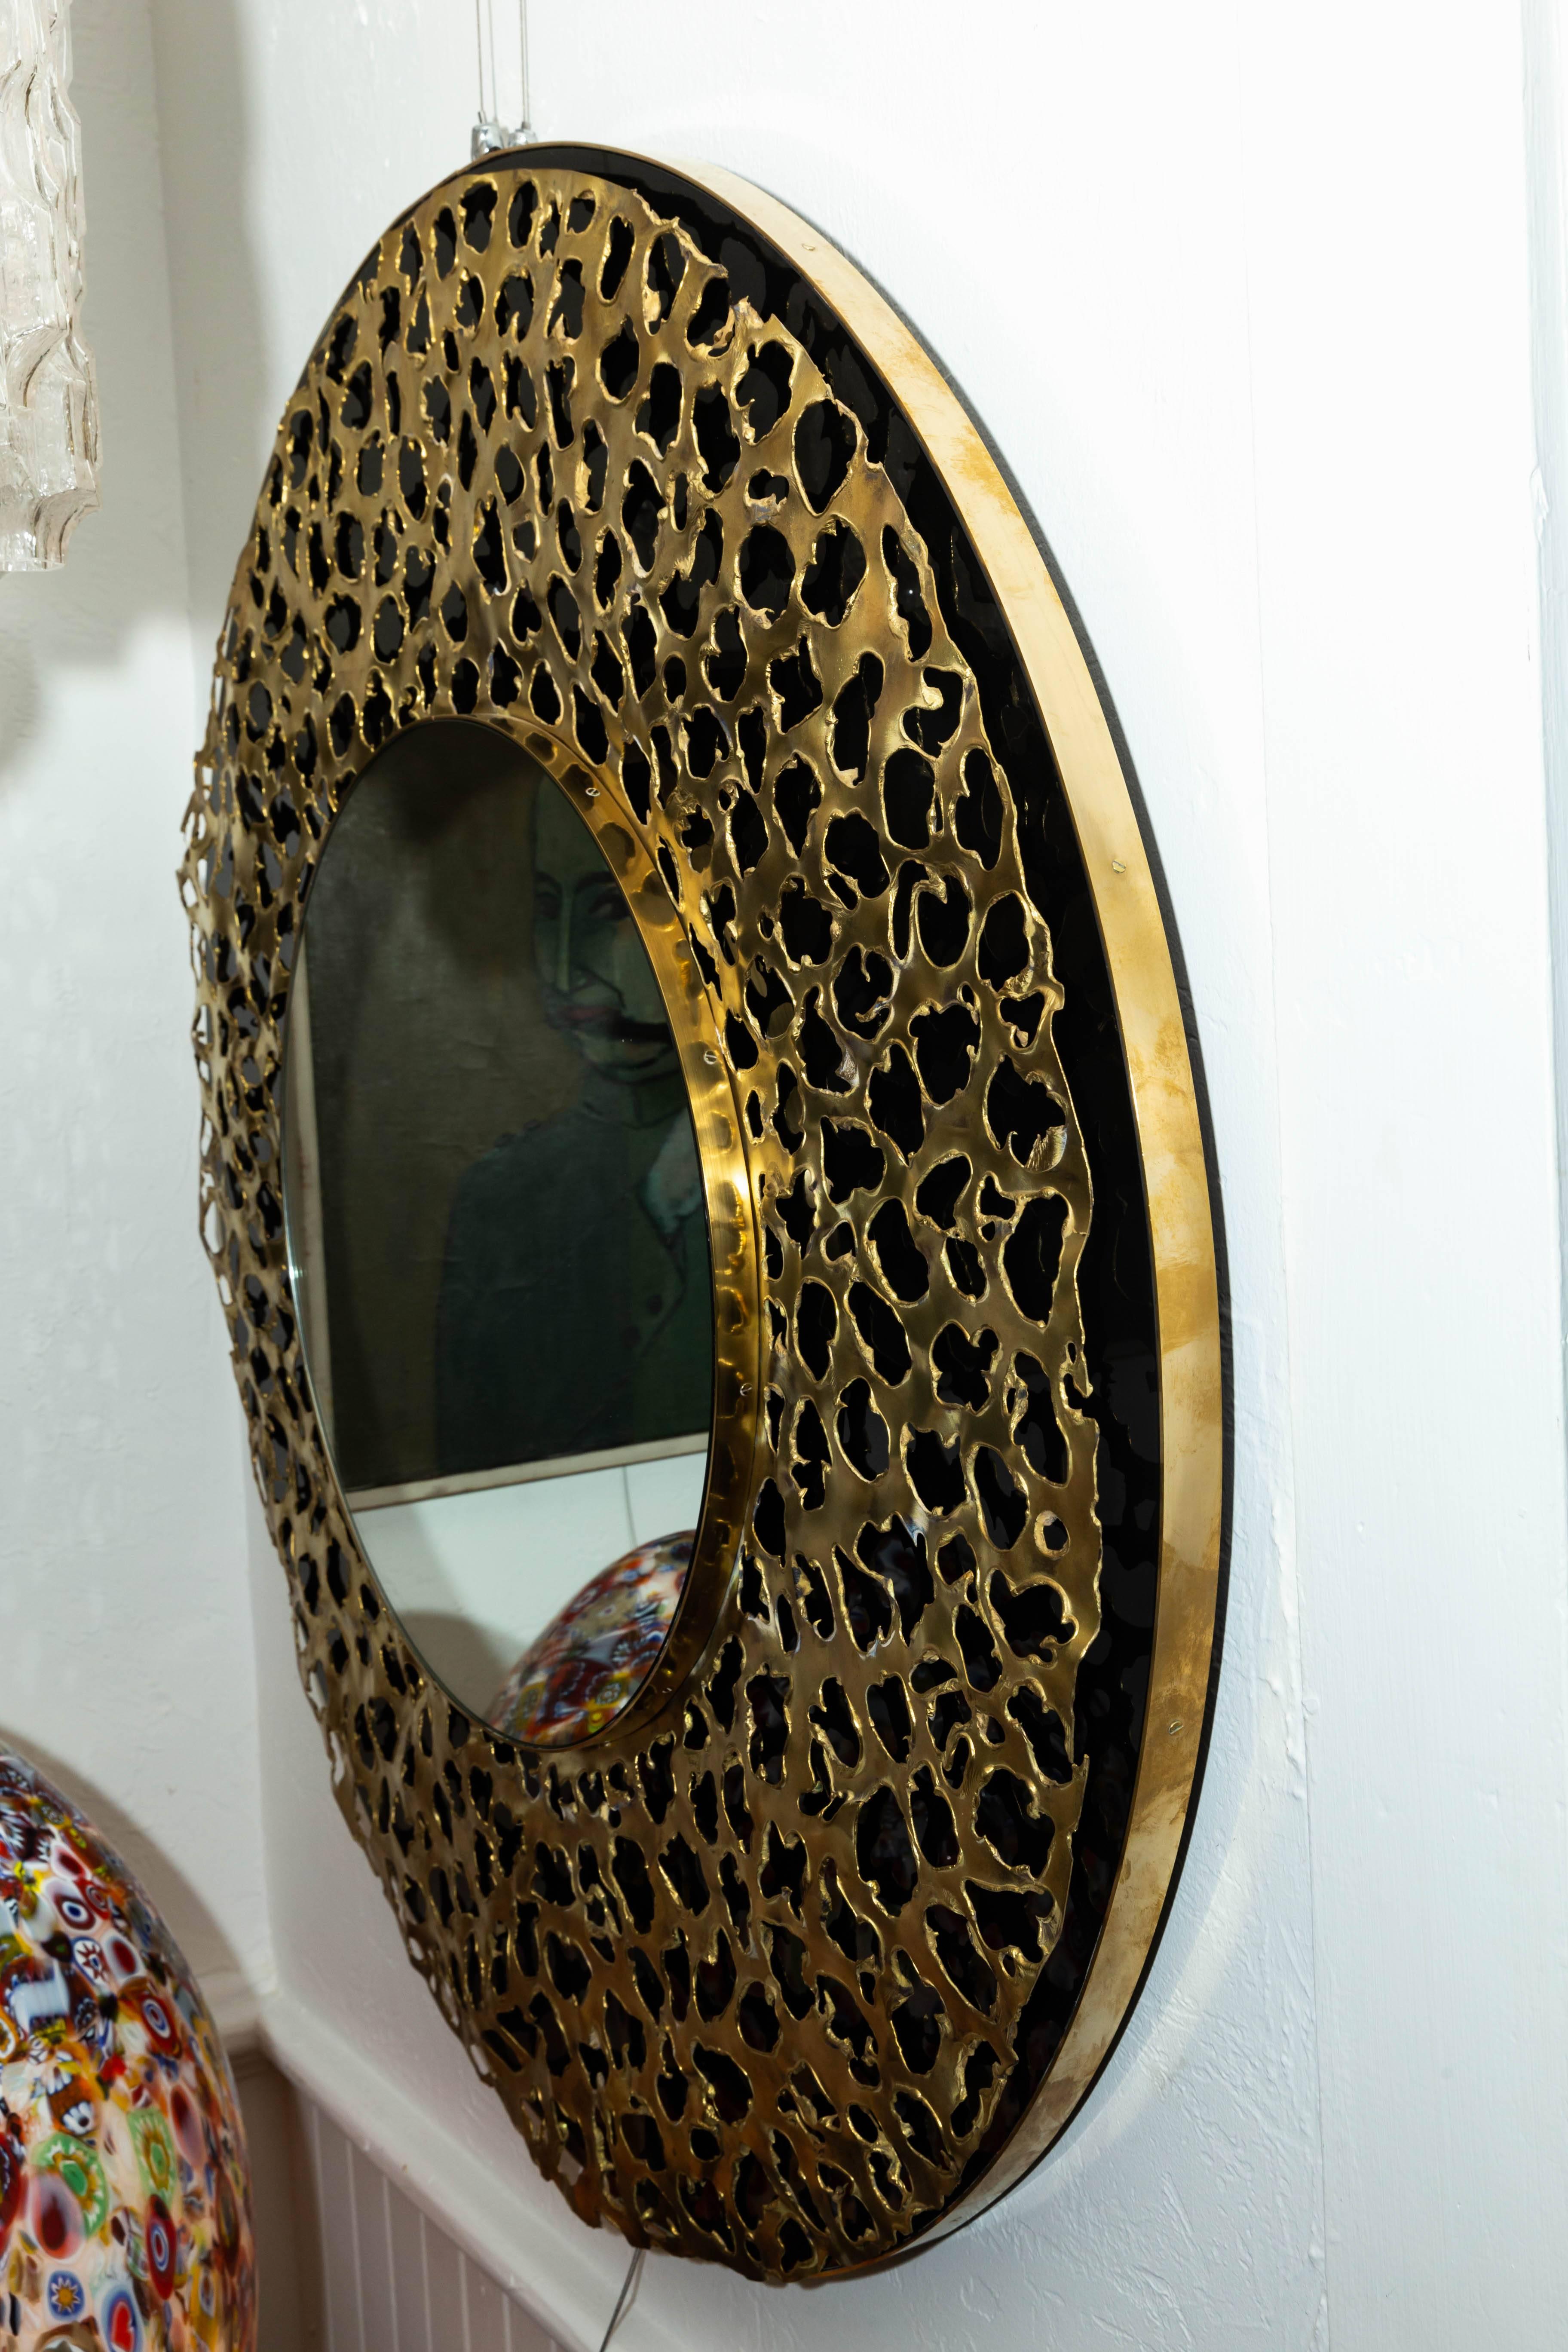 Circular black mirror with brass Brutalist design.